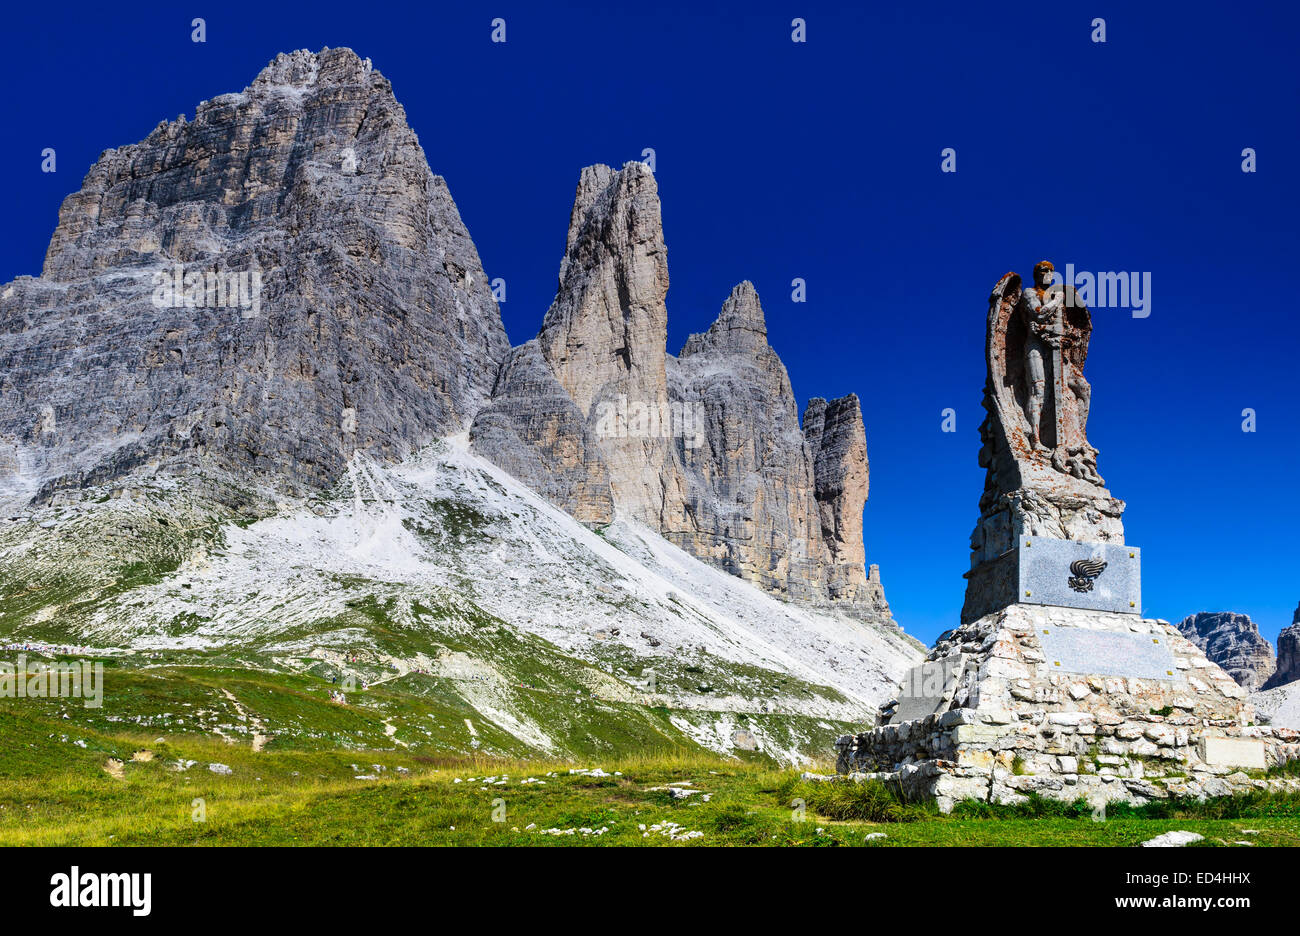 Vue de la célèbre Tre Cime di Lavaredo, Drei Zinnen dans les montagnes des Dolomites, l'un des plus connus dans la montagne des Alpes européennes Banque D'Images